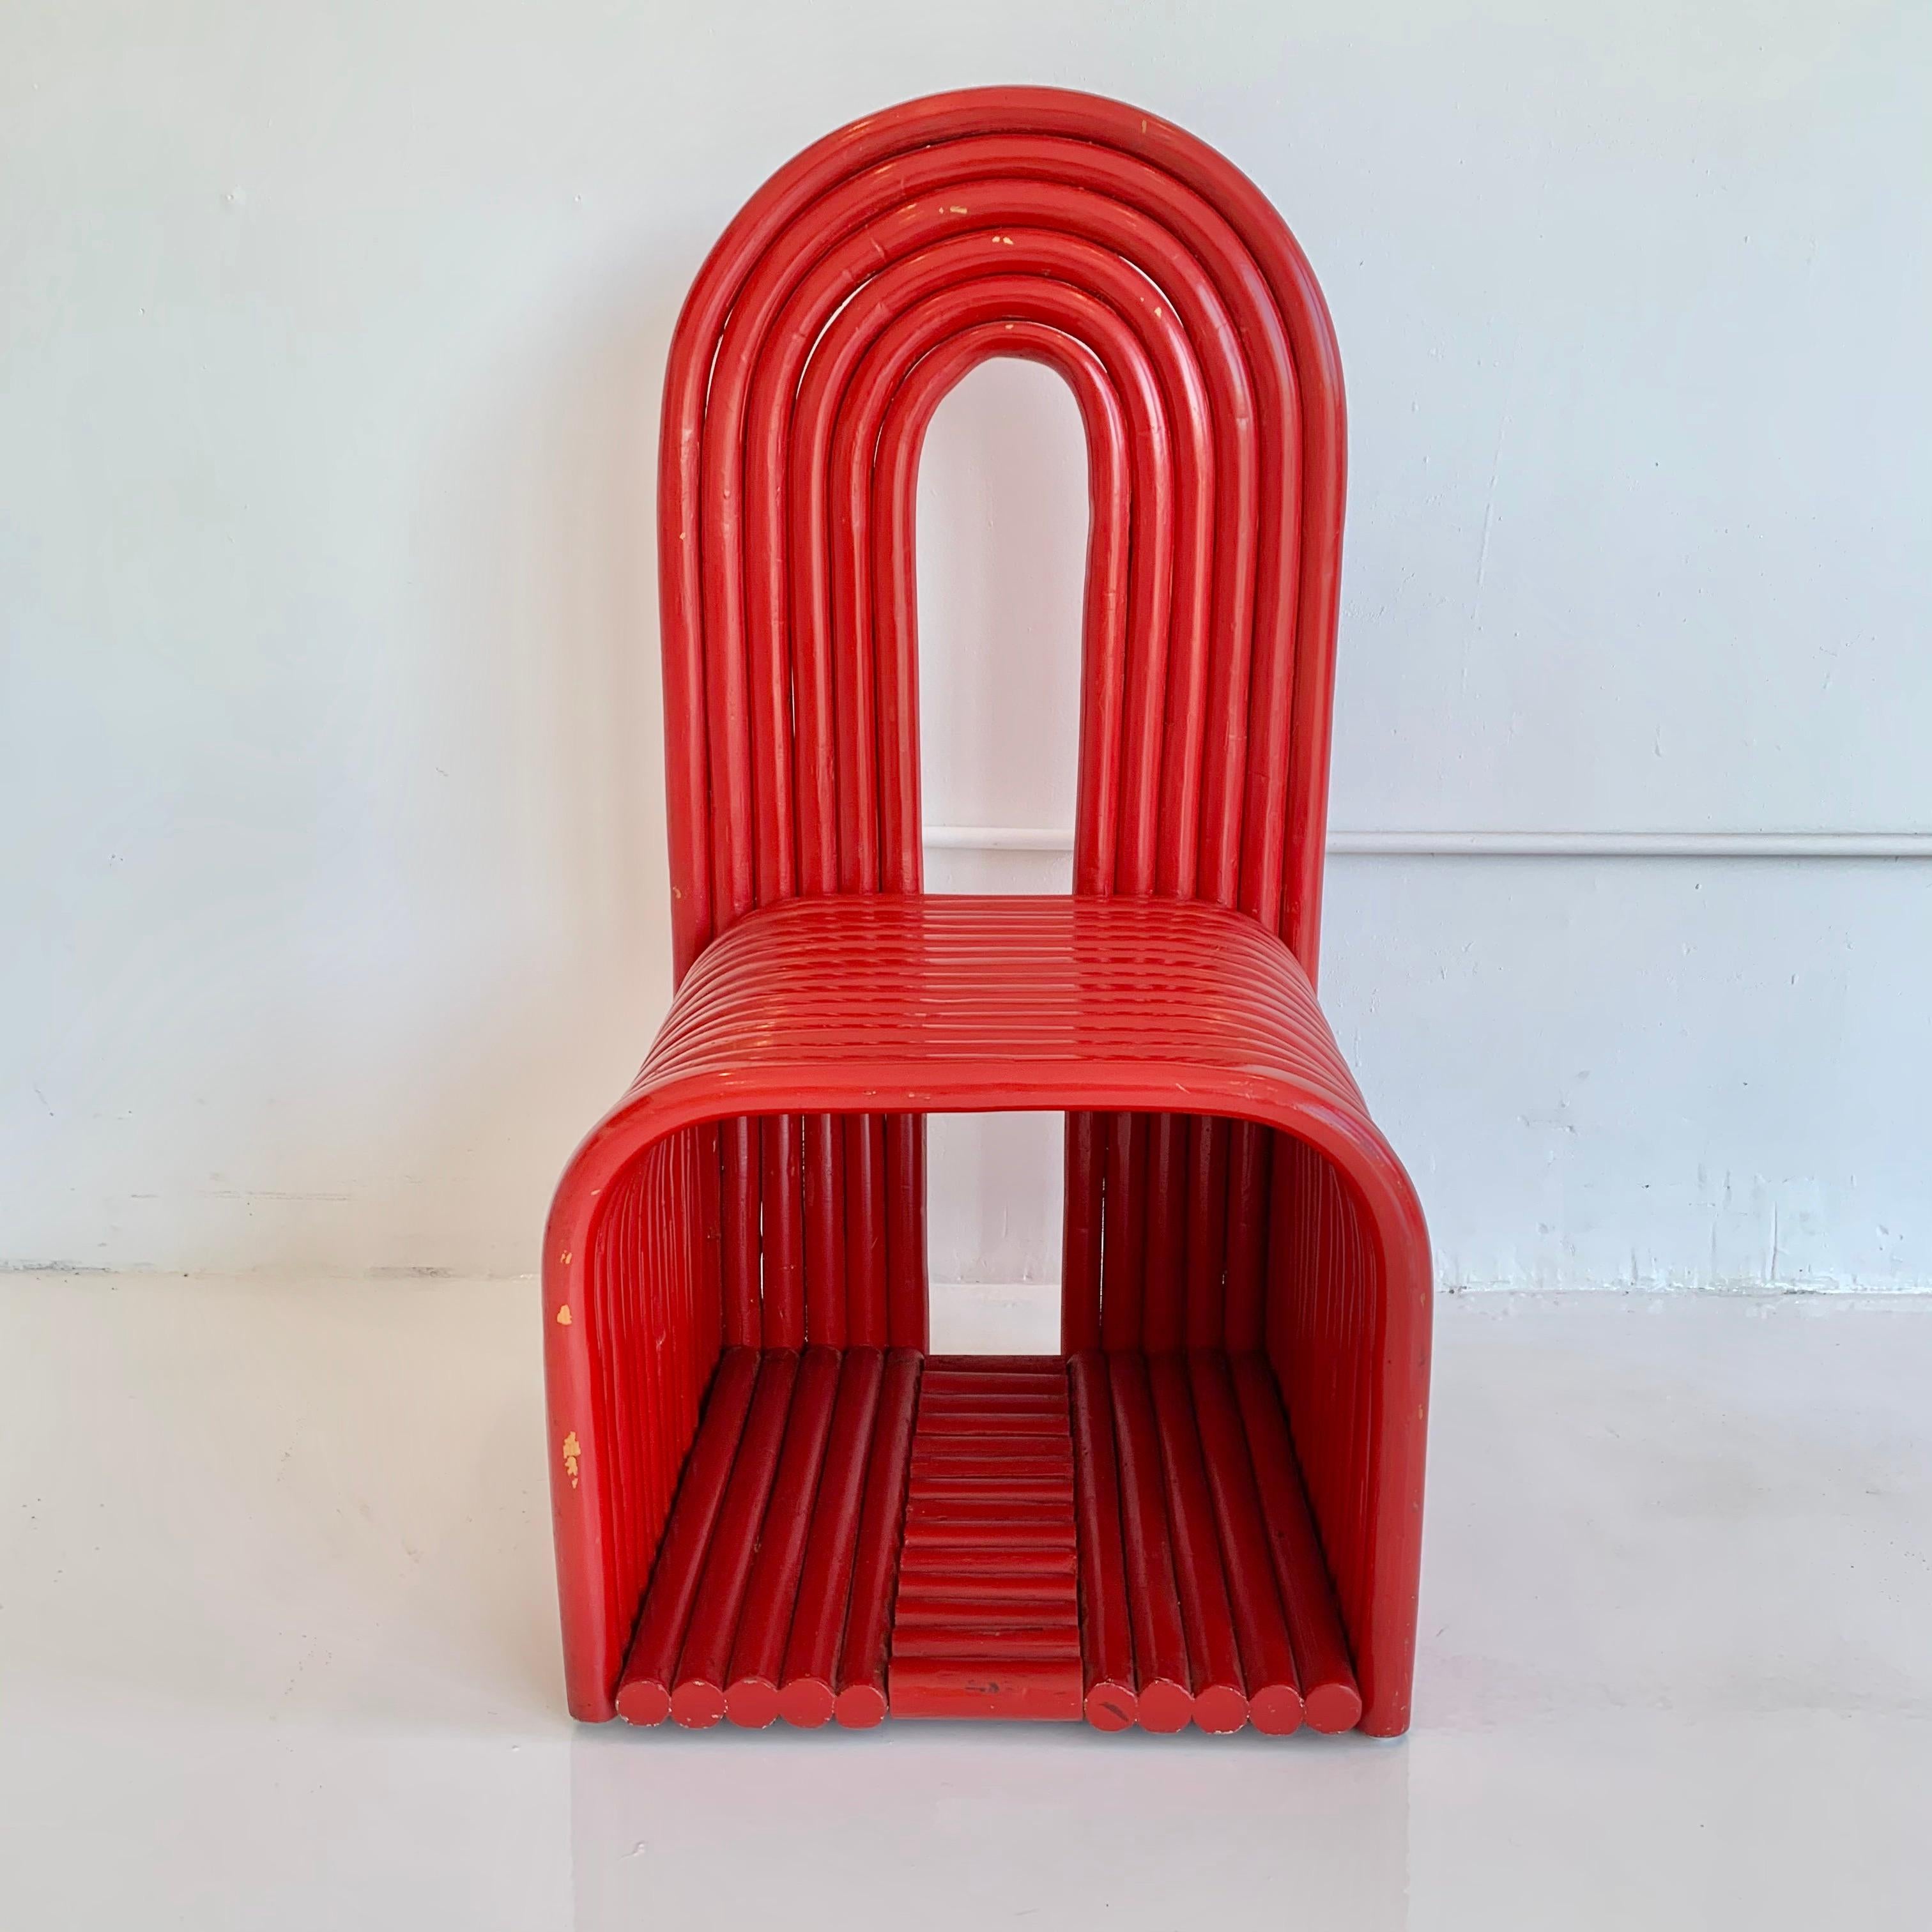 Magnifique chaise en bois courbé de couleur rouge. Chaise classique de style Memphis avec dossier en trou de serrure. Lourd et bien fait. Quelques pertes/usures sur la peinture. Excellent fauteuil d'appoint autonome.